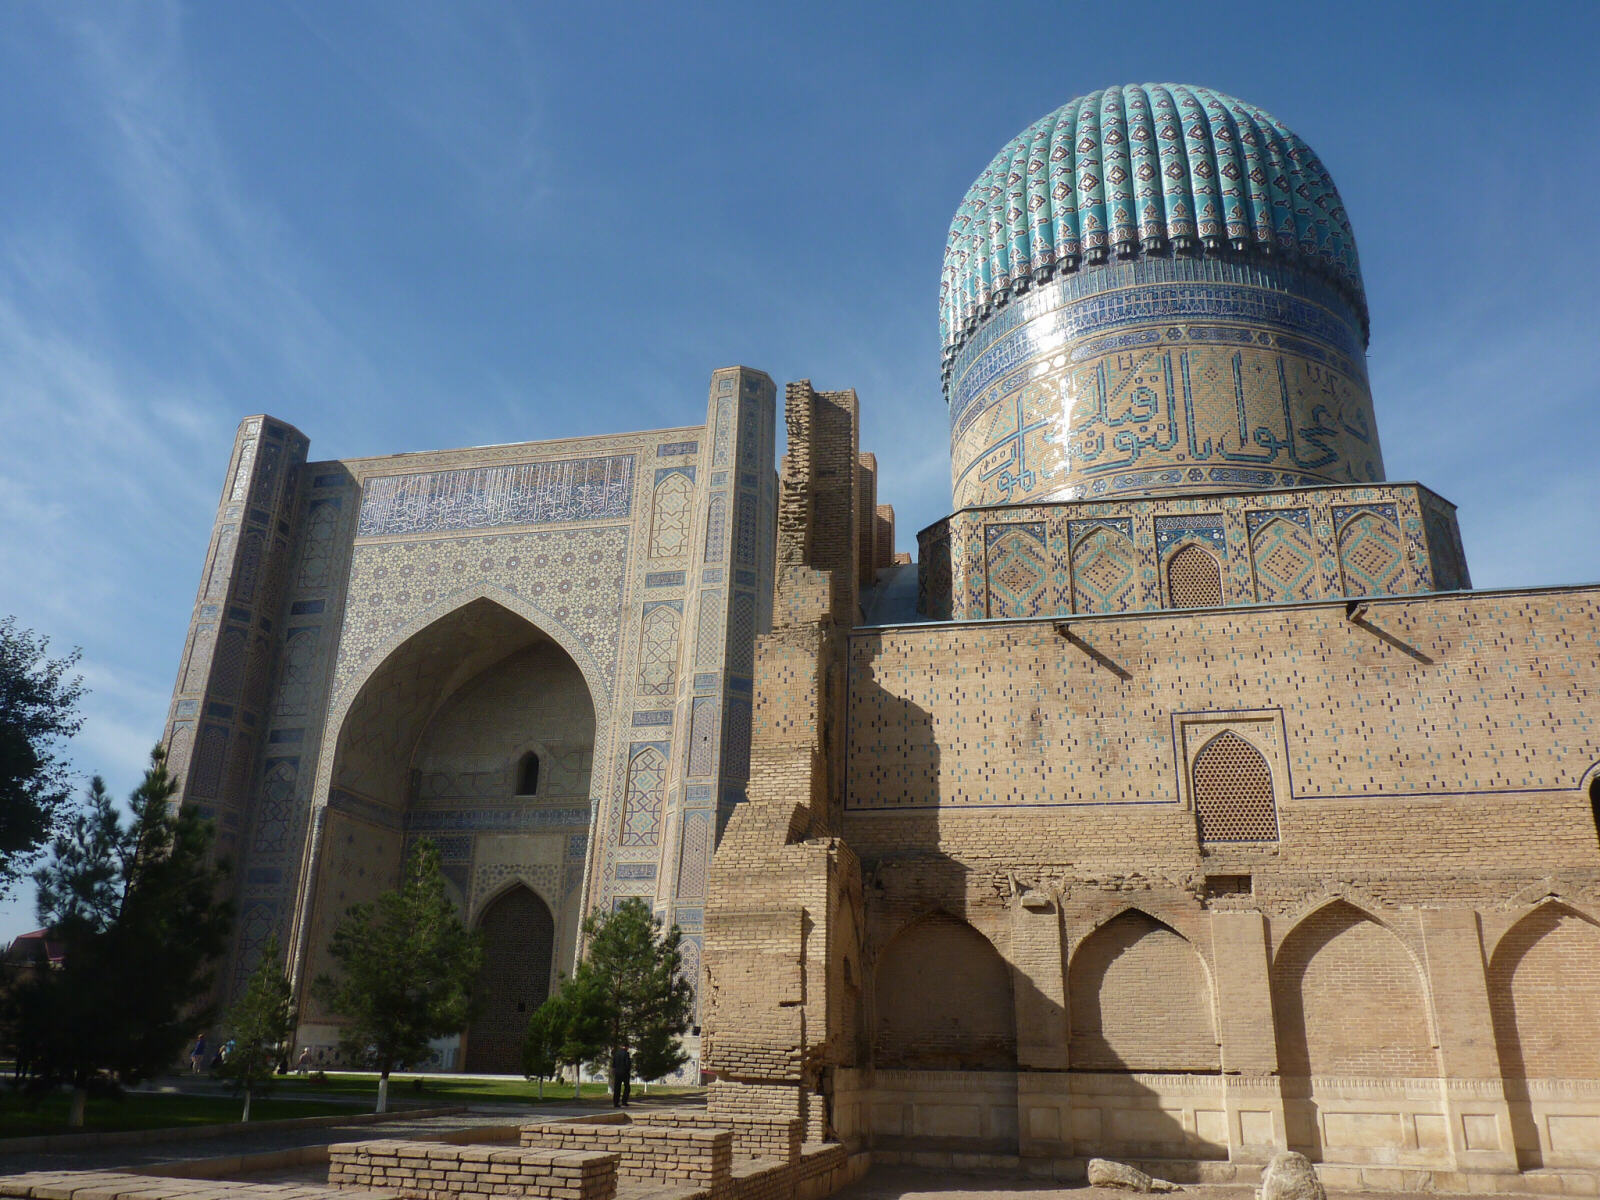 The Bibi Khanym mosque in Samarkand, Uzbekistan